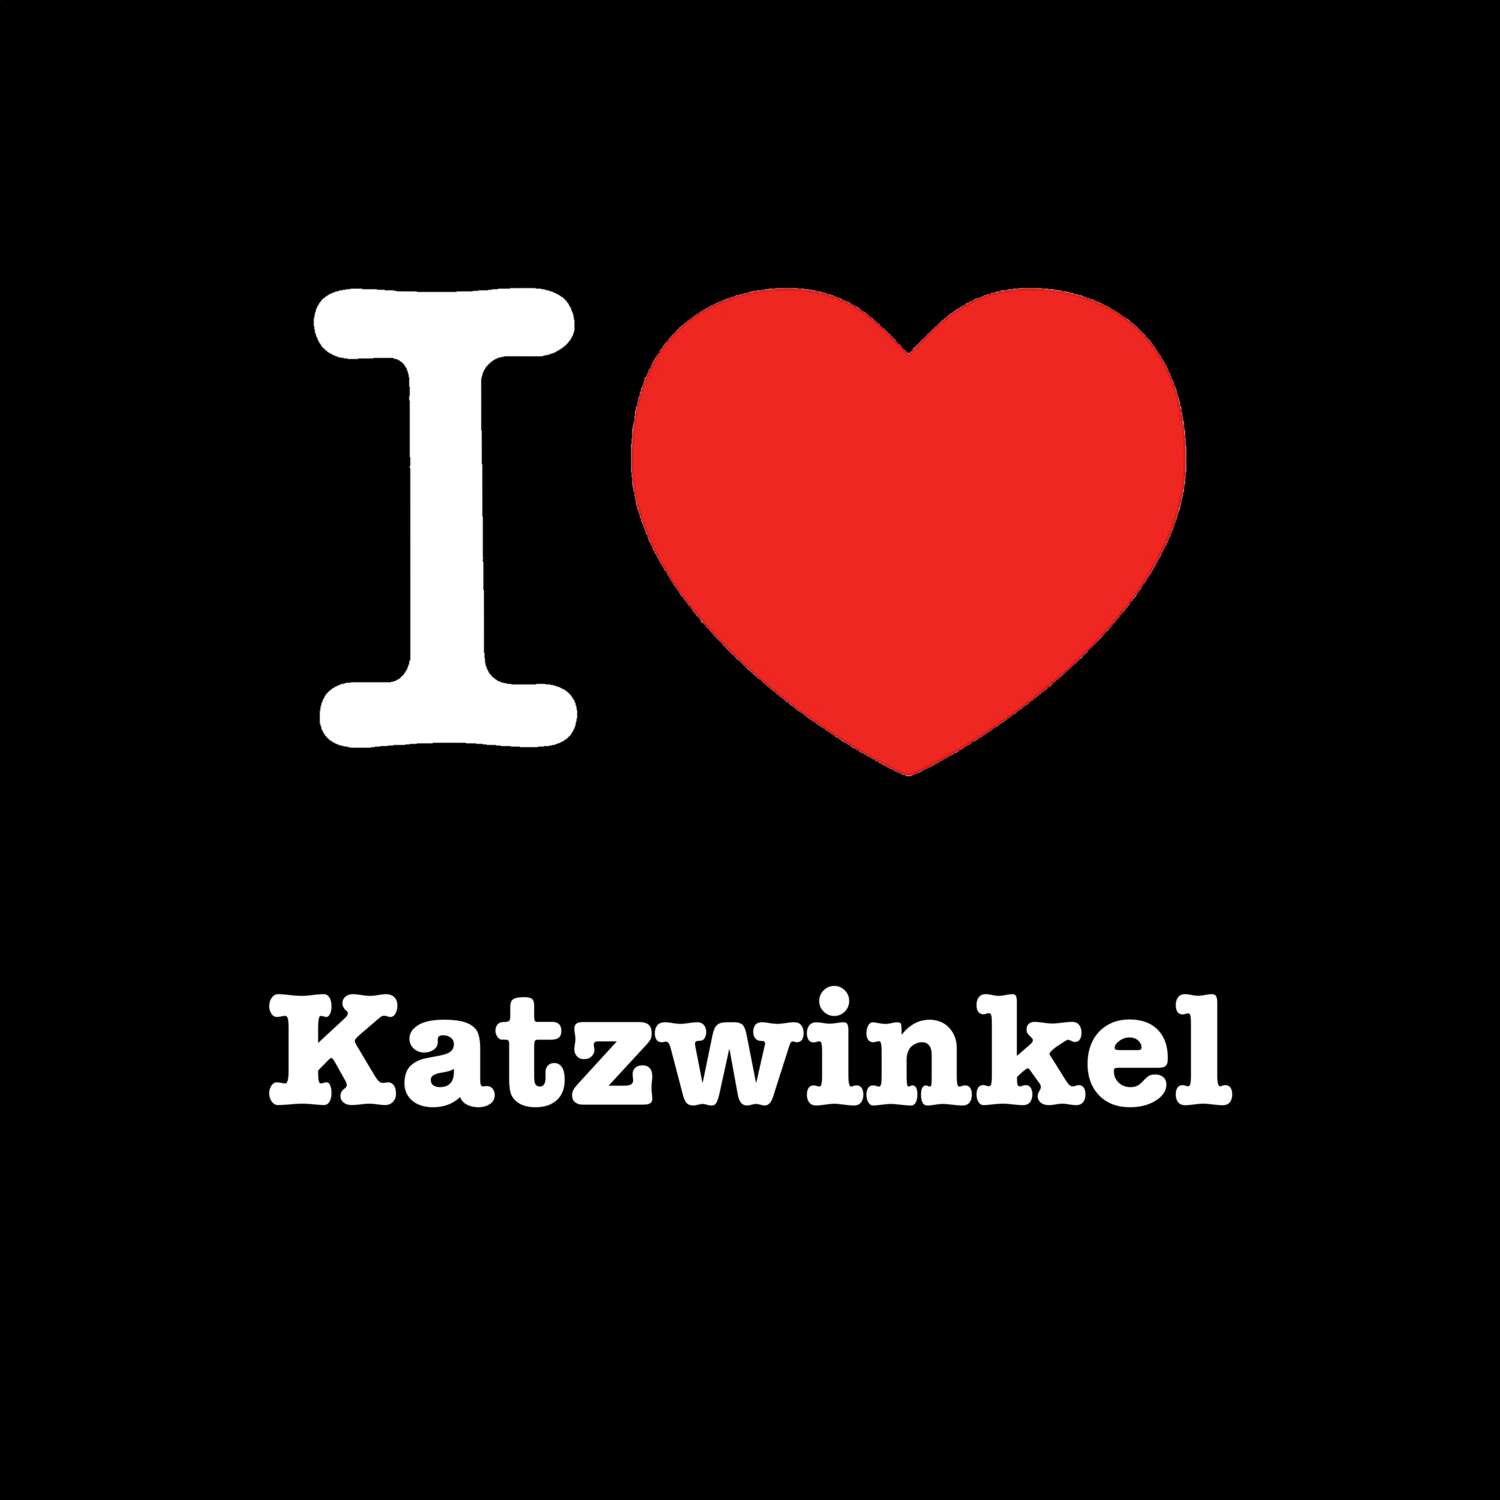 Katzwinkel T-Shirt »I love«